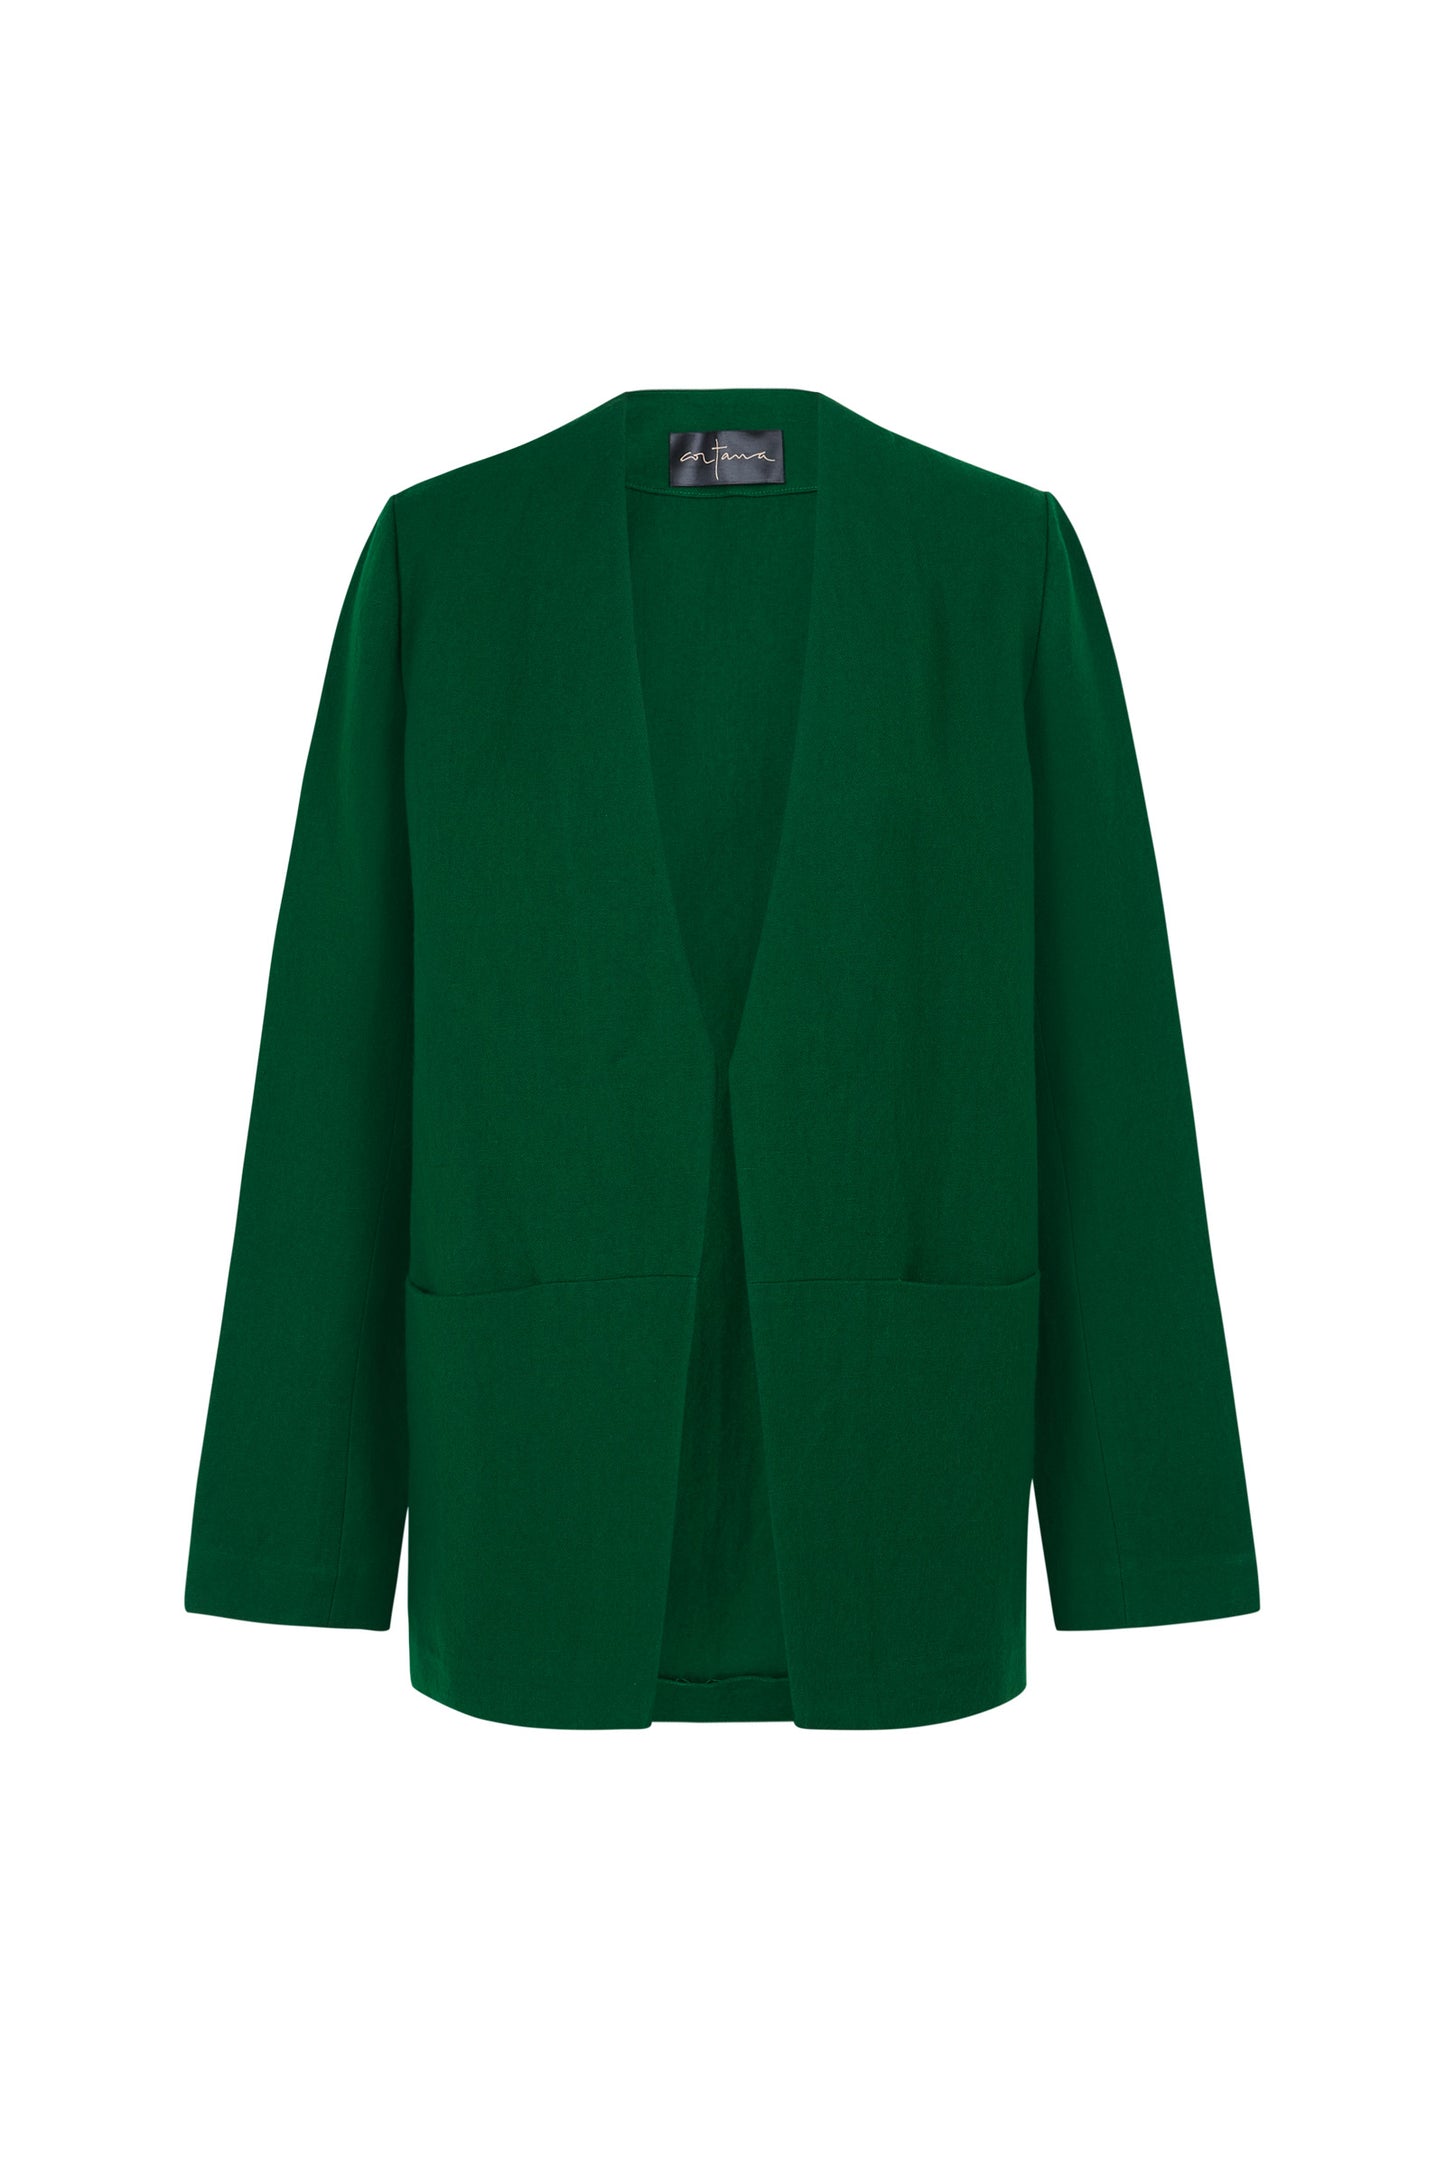 Viena, chaqueta en lino y lana virgen verde esmeralda